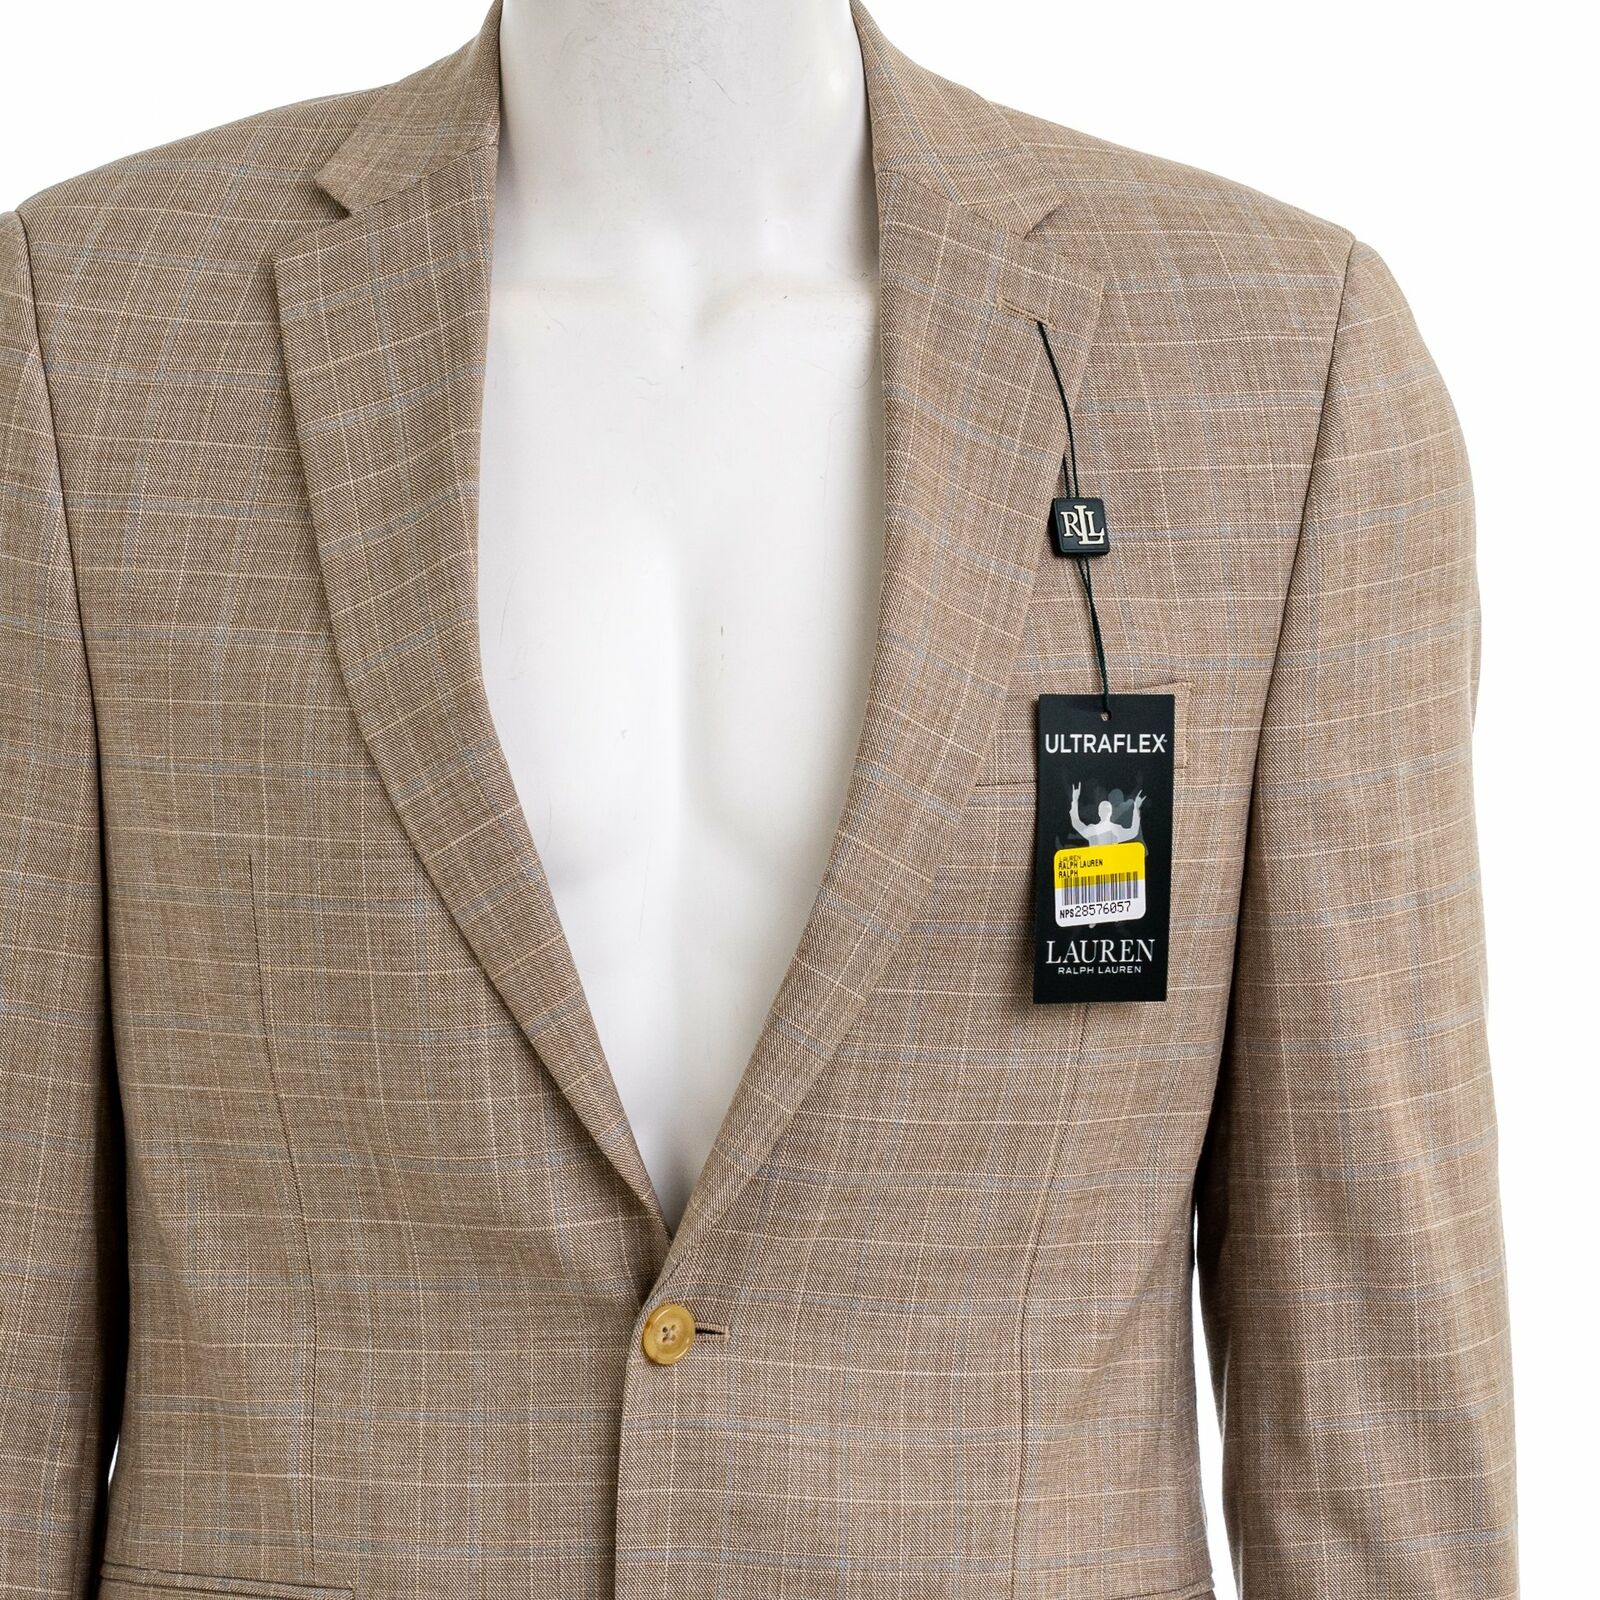 LAUREN RALPH LAUREN Men's Lexington Ultra Flex Suit Jacket Blazer Styl –  DDT Boutique